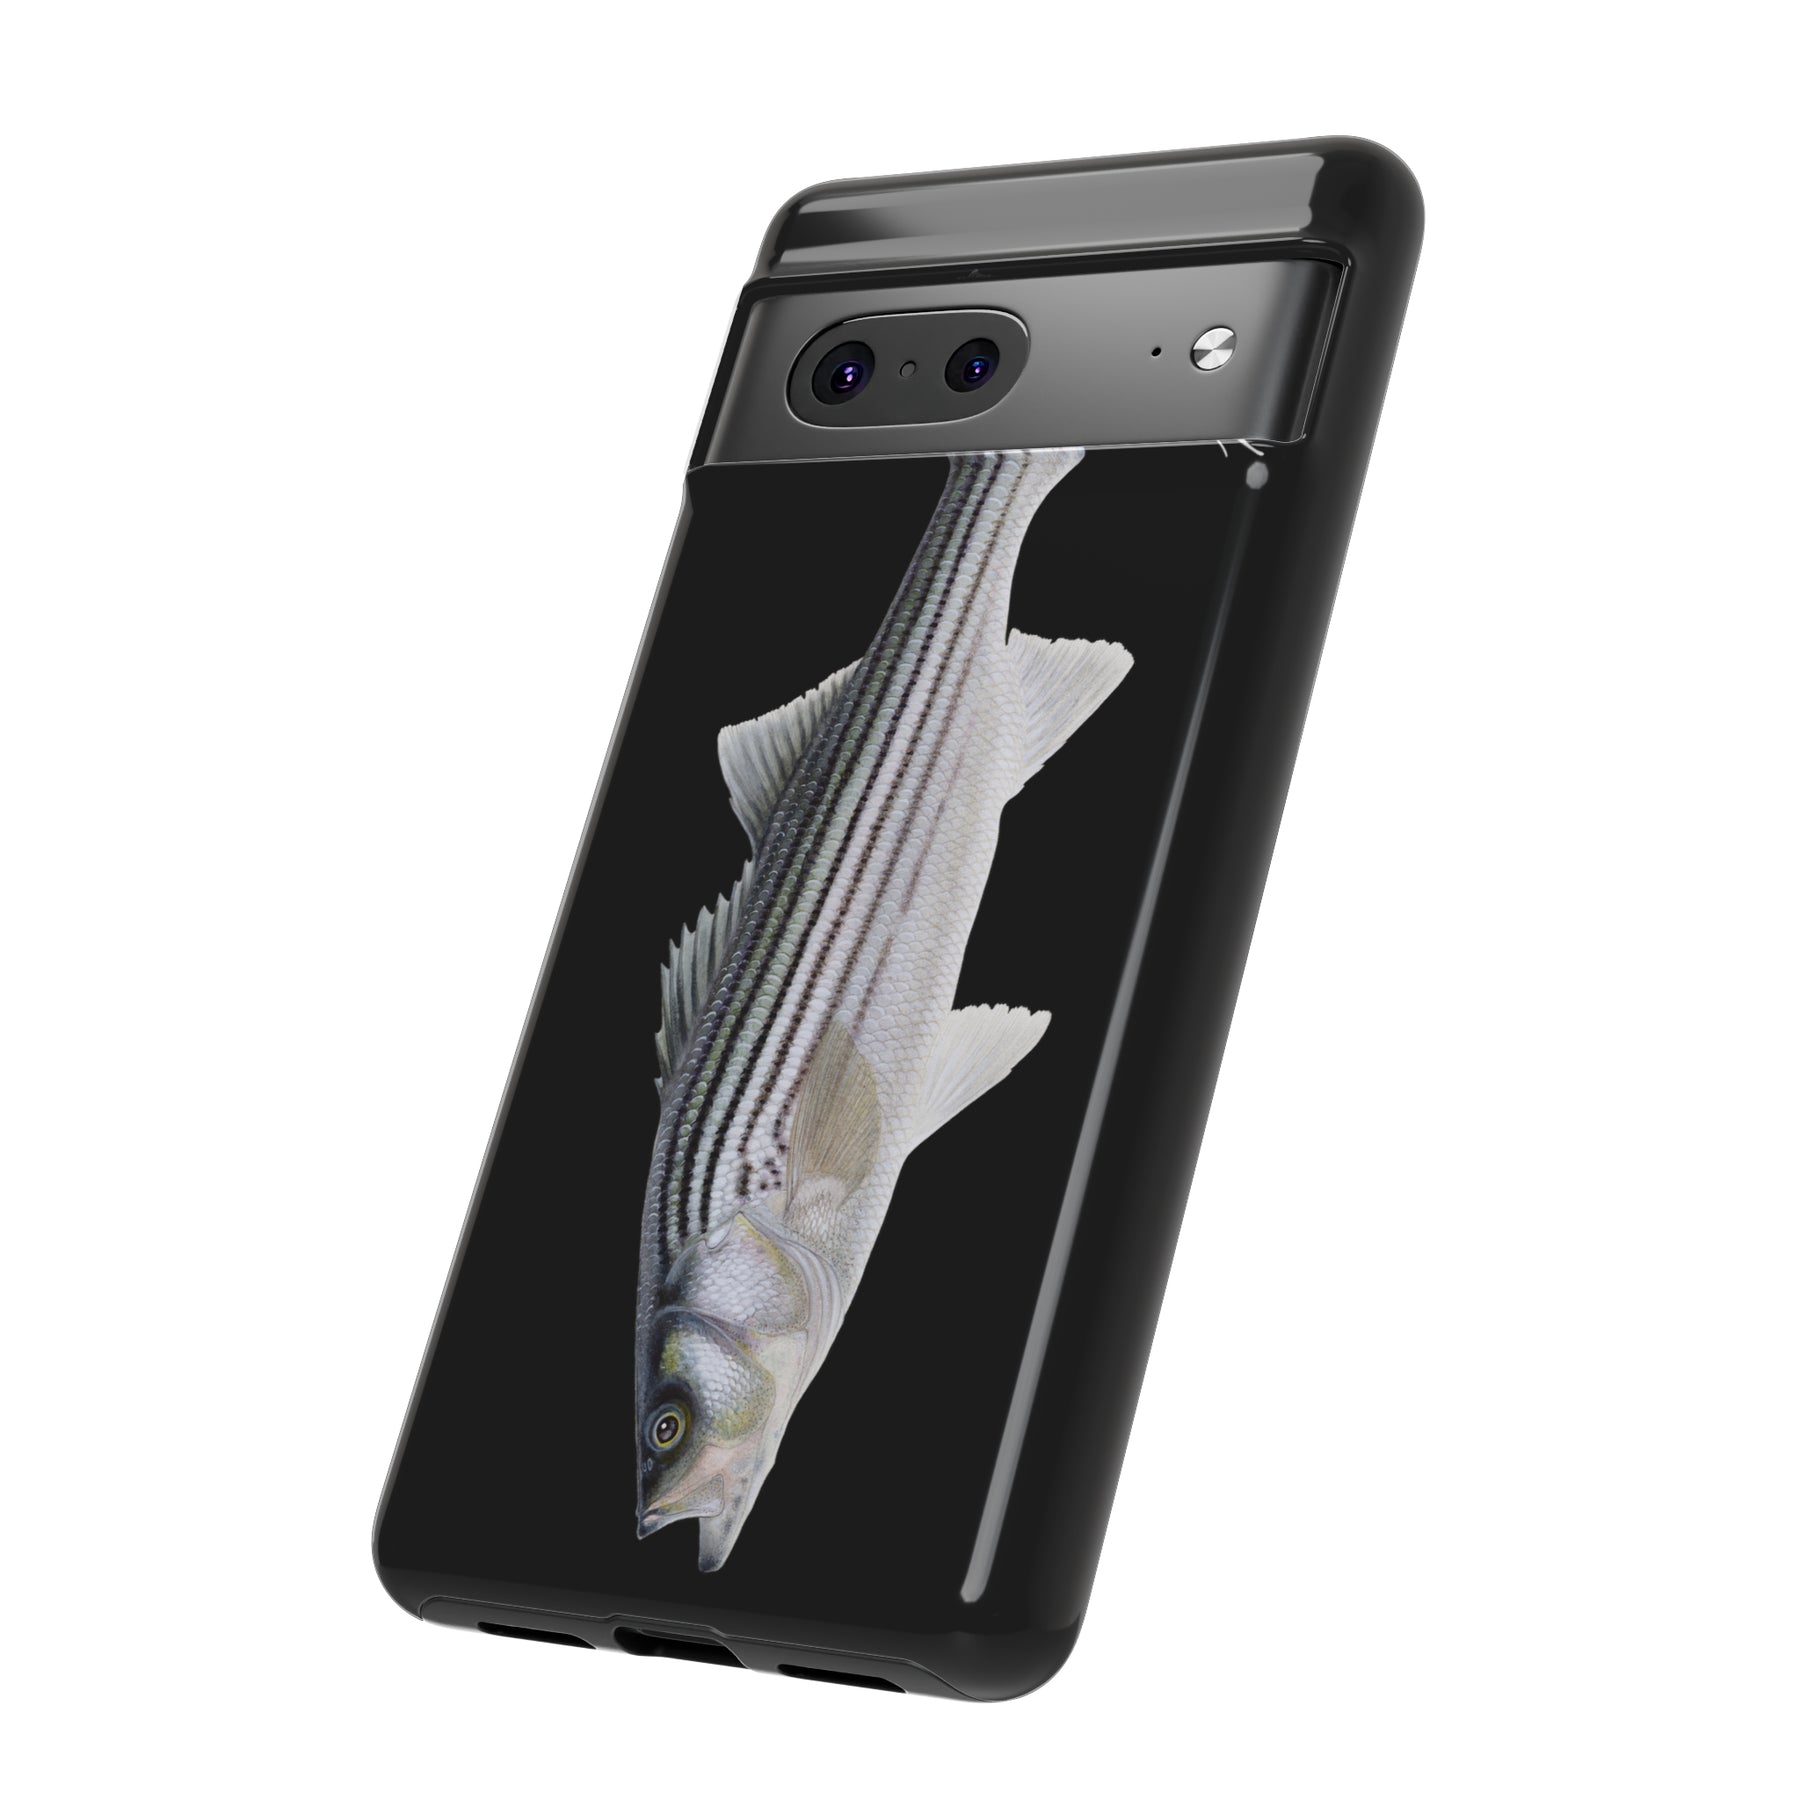 Schoolie Striper Black Phone Case (Samsung)